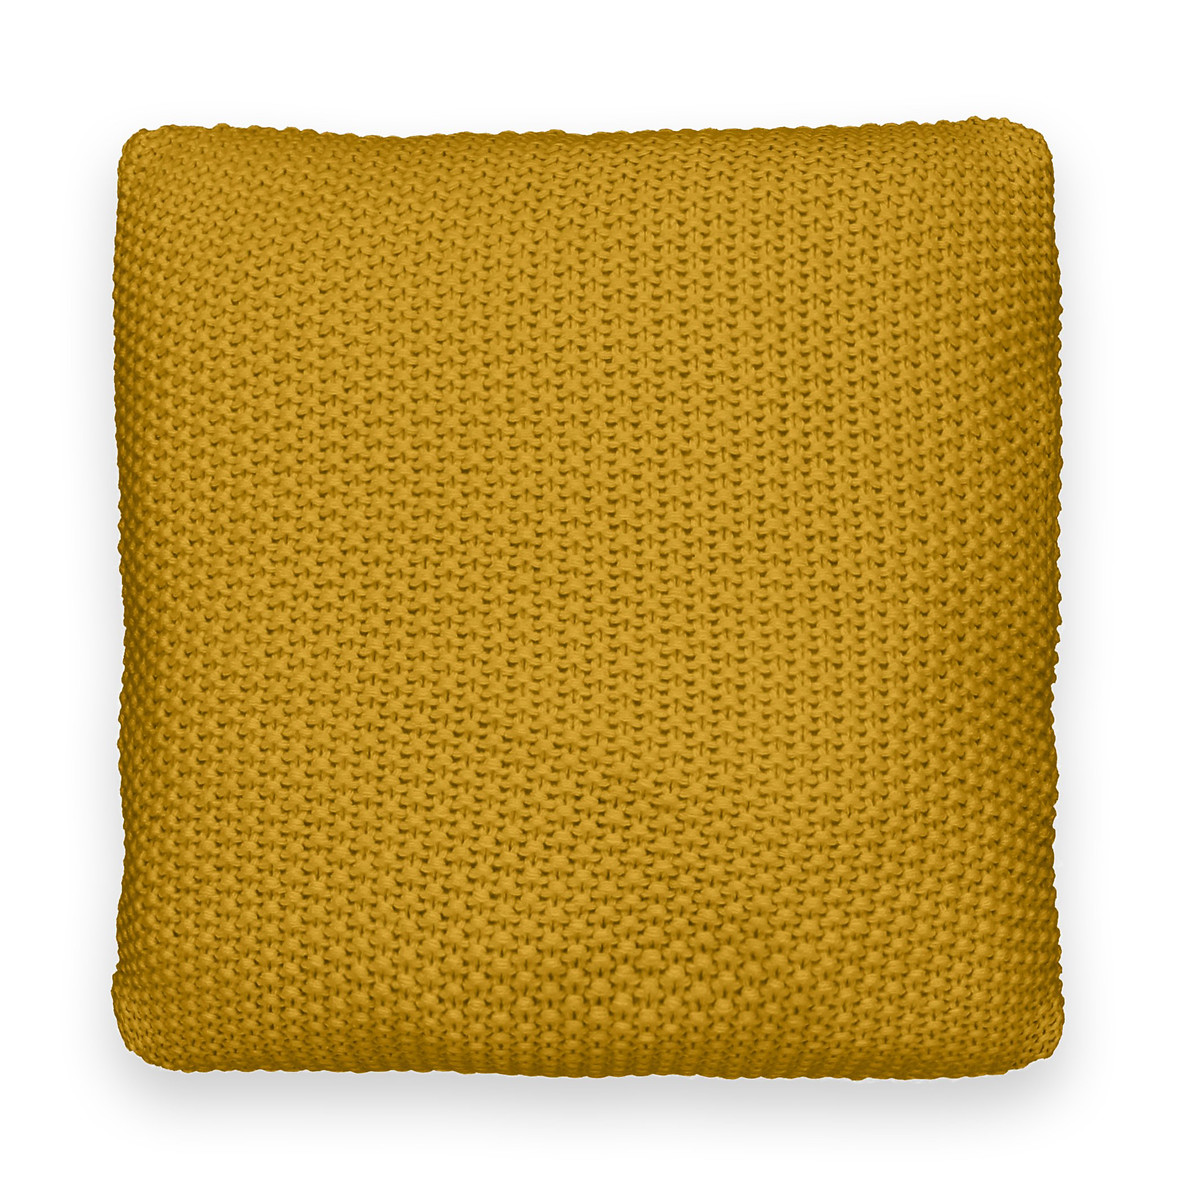 Чехол на подушку из трикотажа WESTPORT 45 x 45 см желтый чехол на подушку sanah 45 x 45 см белый